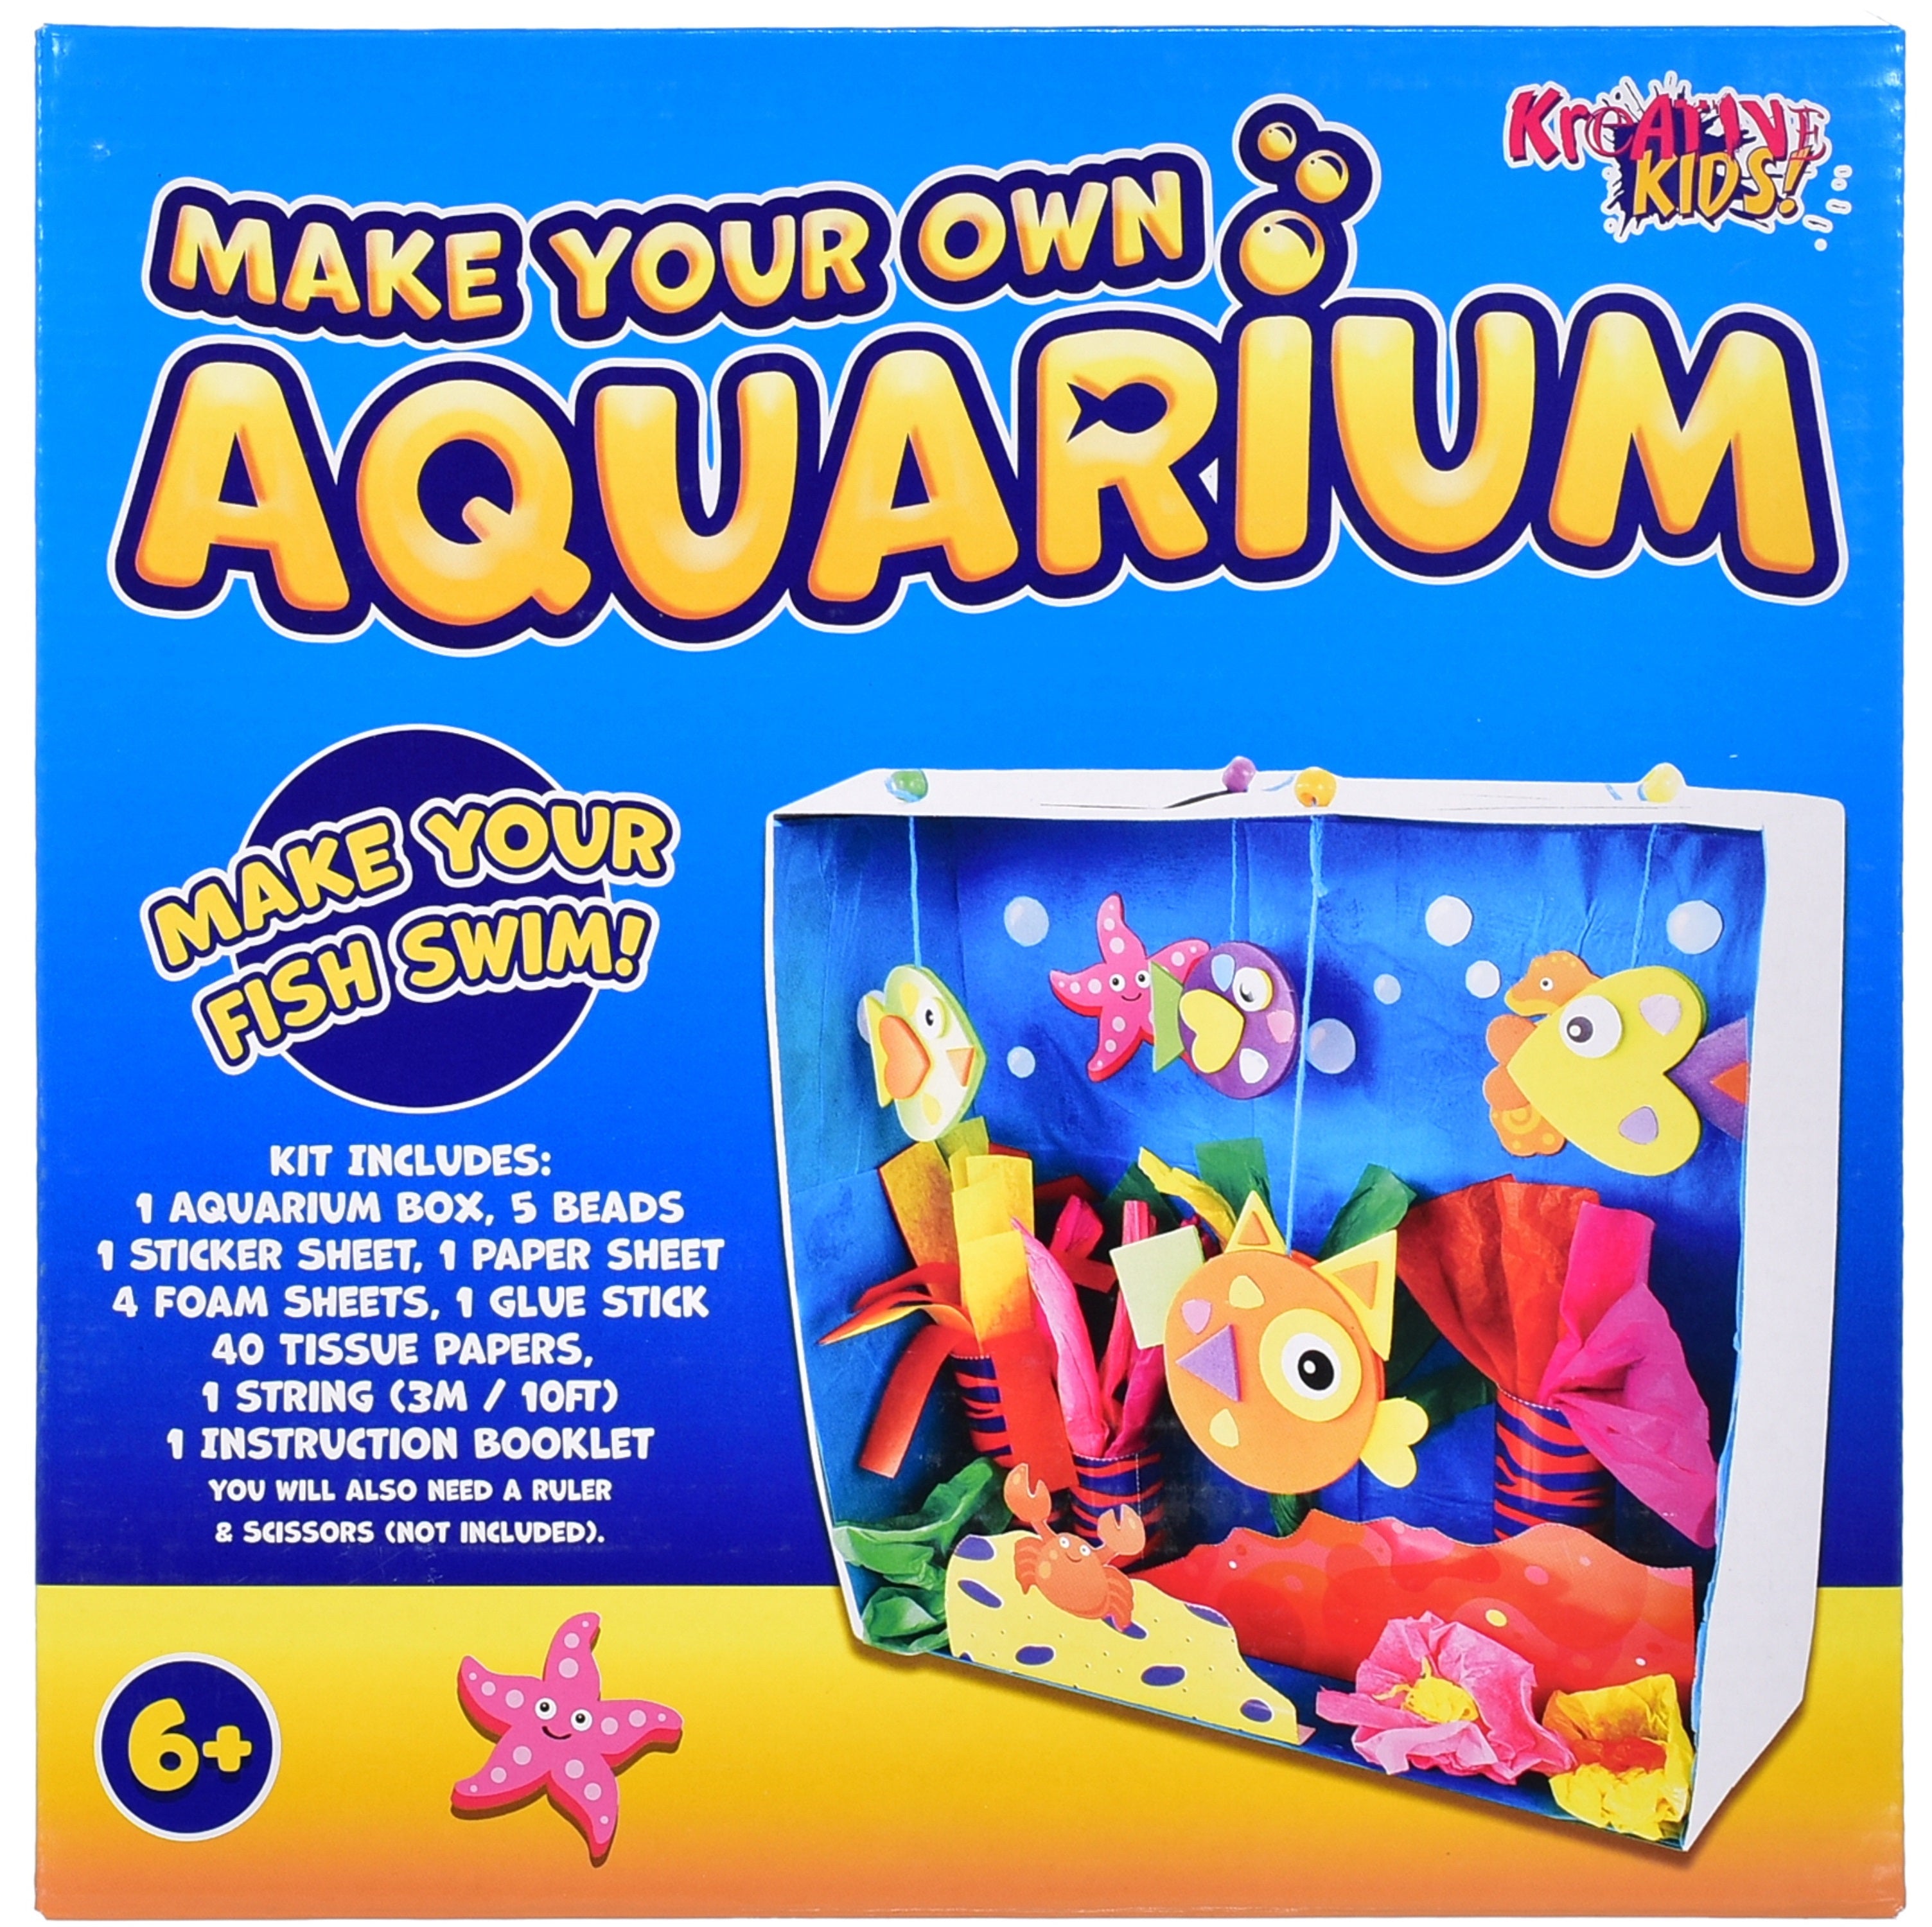 Make Your Own Aquarium